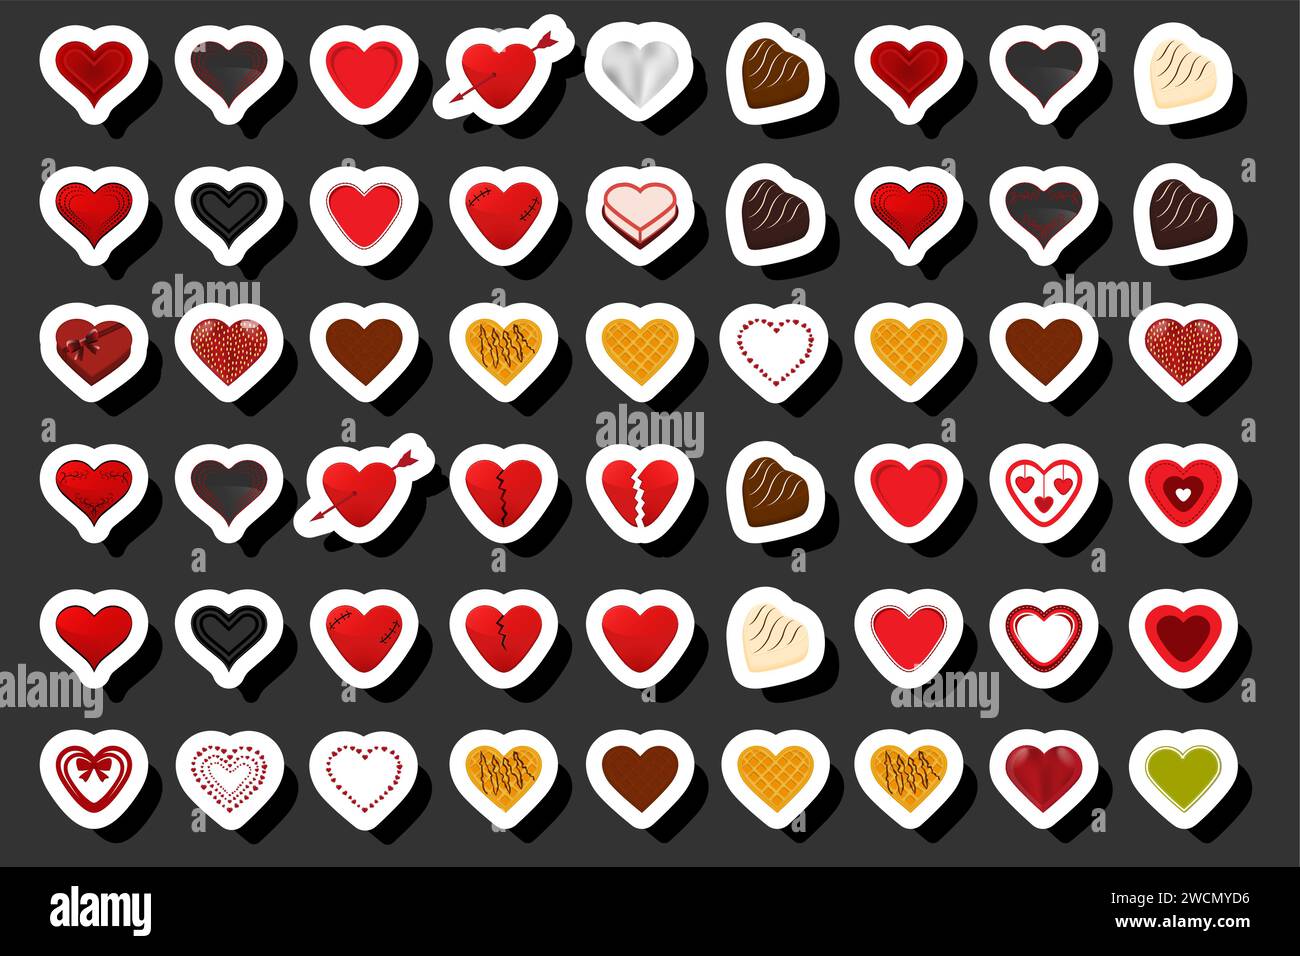 Ilustración sobre el tema Corazón de caramelo de chocolate dulce hermoso, corazón de caramelo que consiste en esmalte de polvo cubierto de chocolate dulce negro, kit chocol Ilustración del Vector